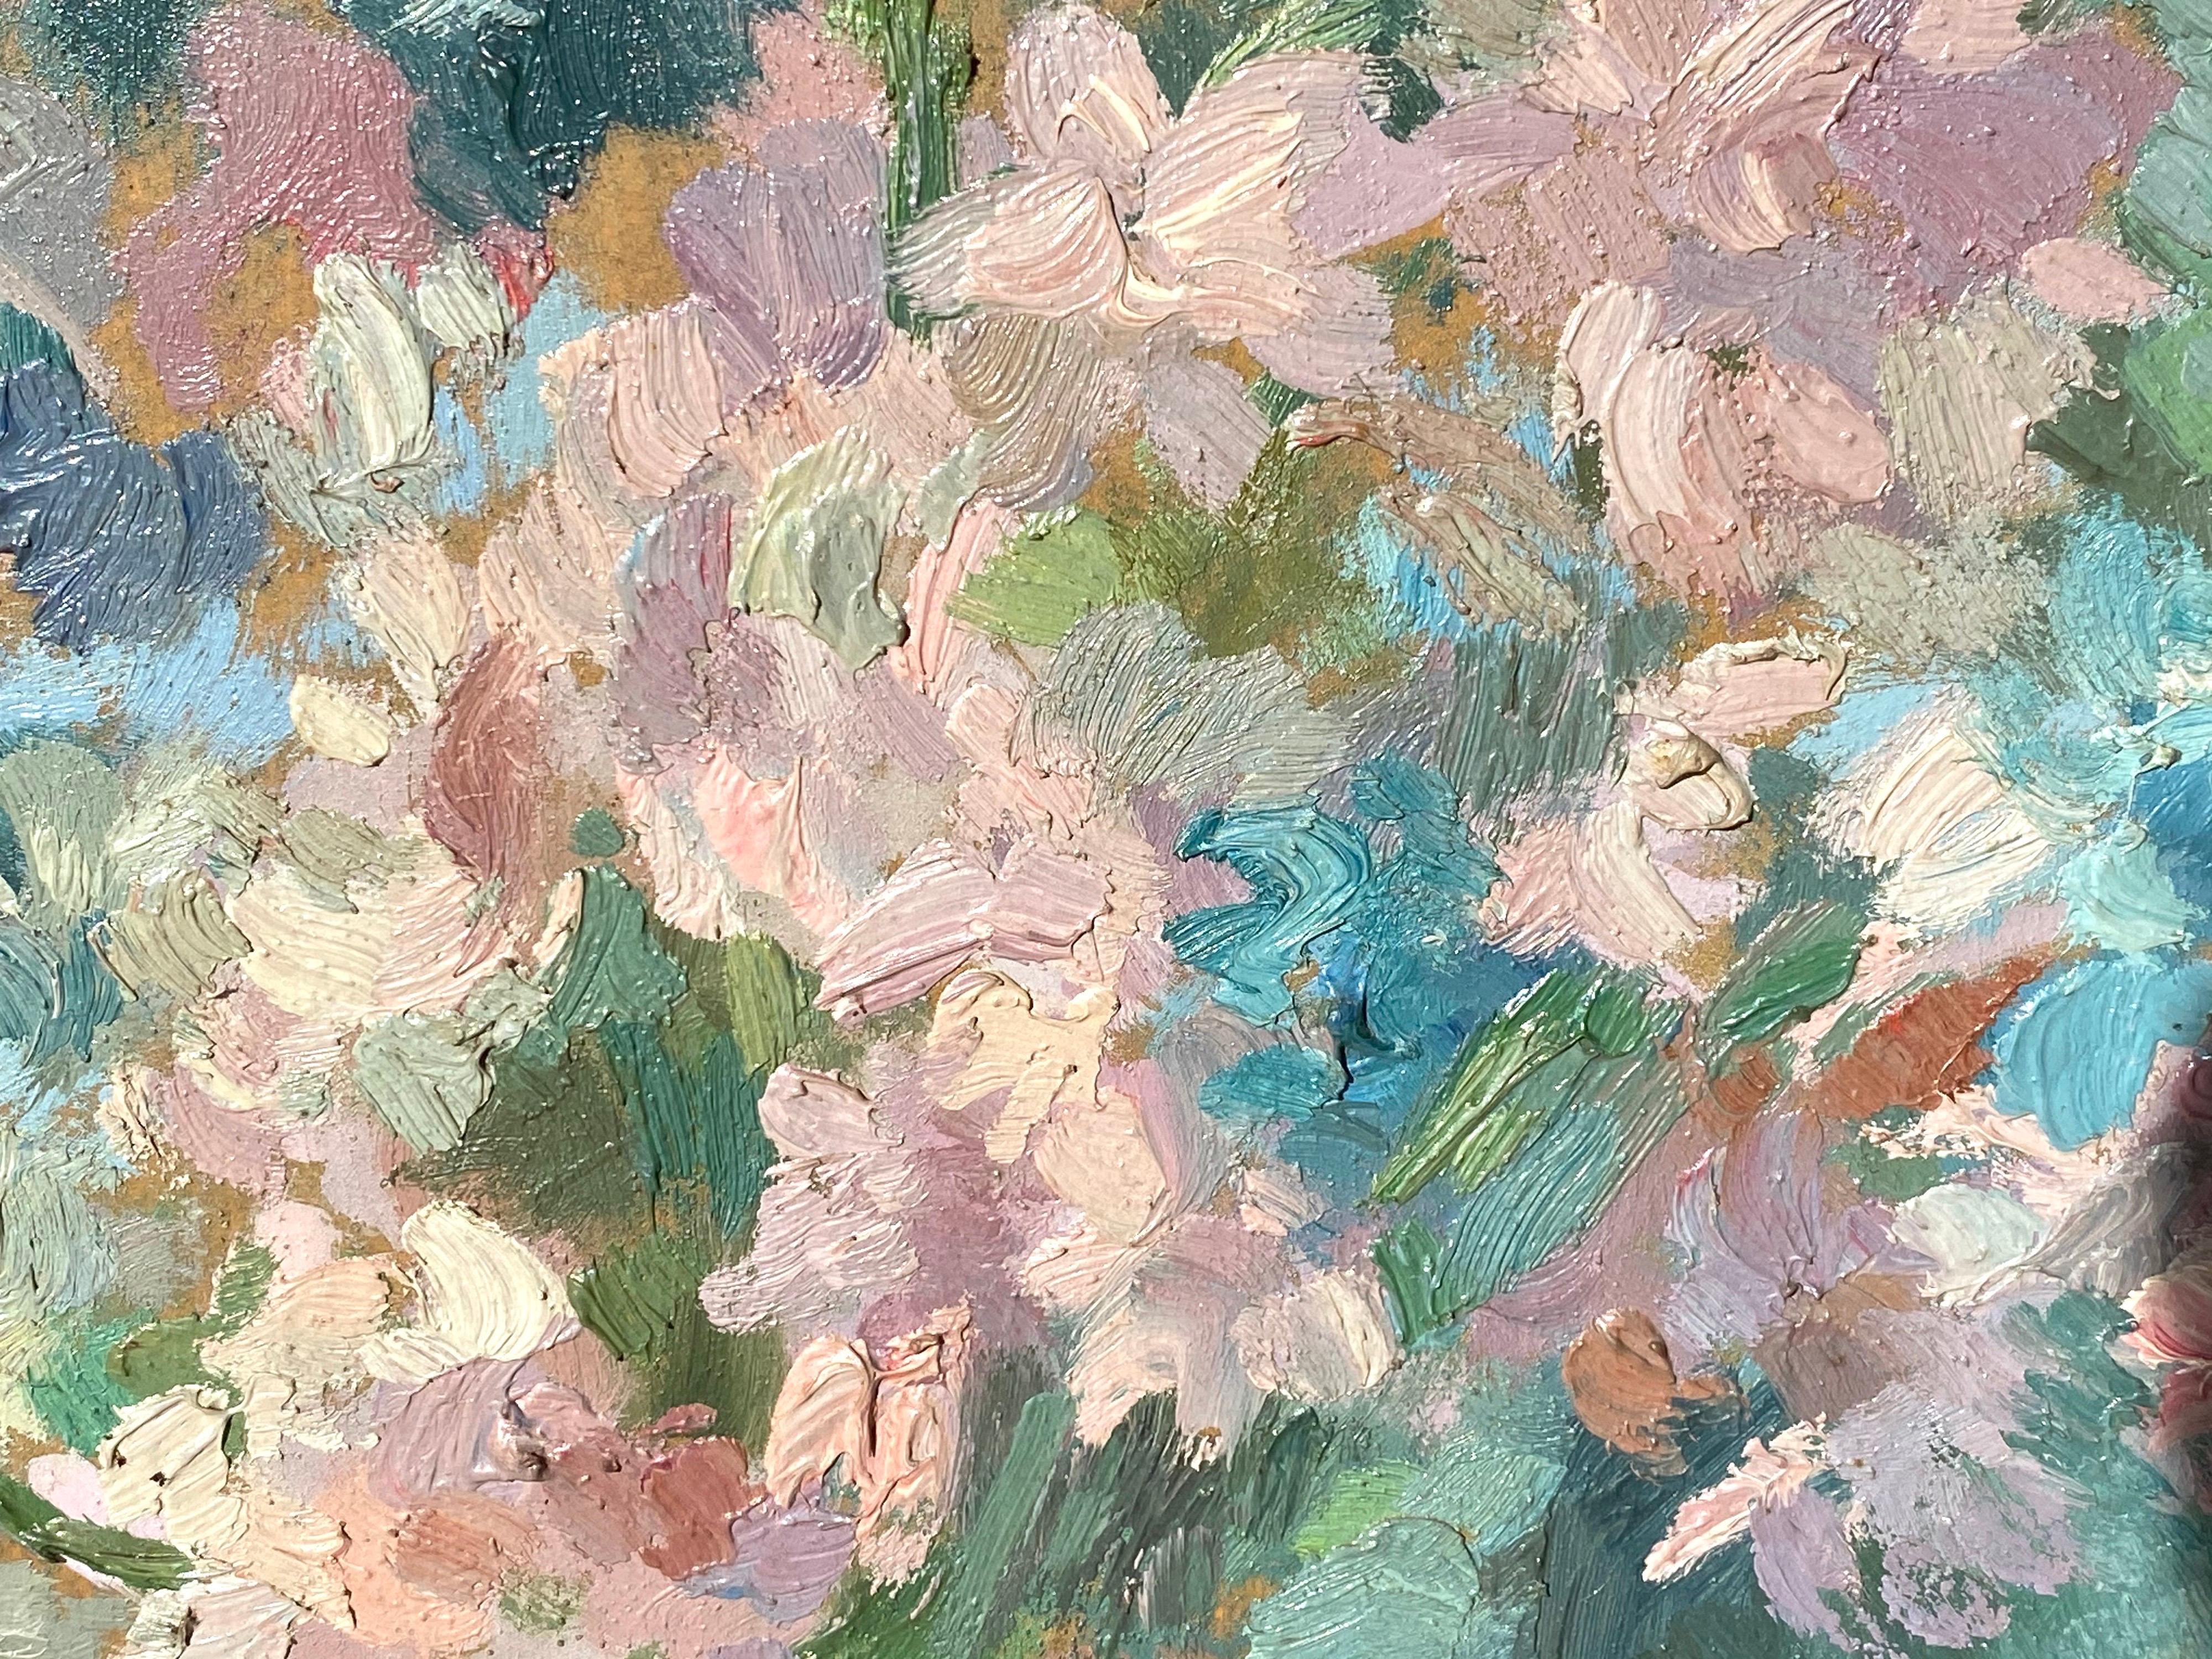 French impressionist painting - école de Paris - Floral Still Life with fan - Impressionist Painting by Joaquim Marti Bas Blasi